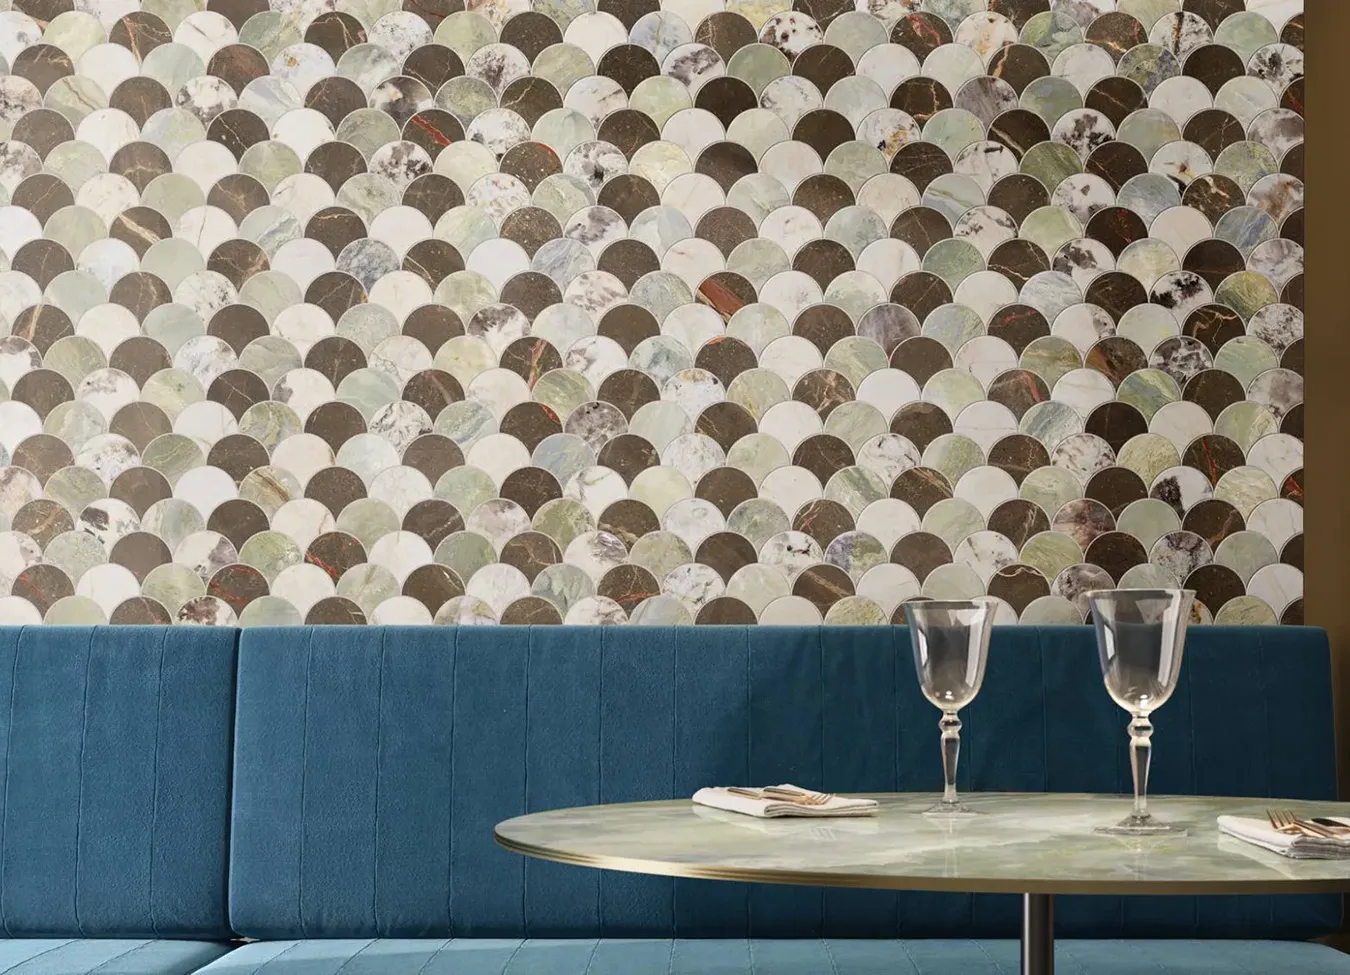 Mur en grès effet marbre avec design mosaïque de la collection 9cento dans un cadre de restaurant élégant.